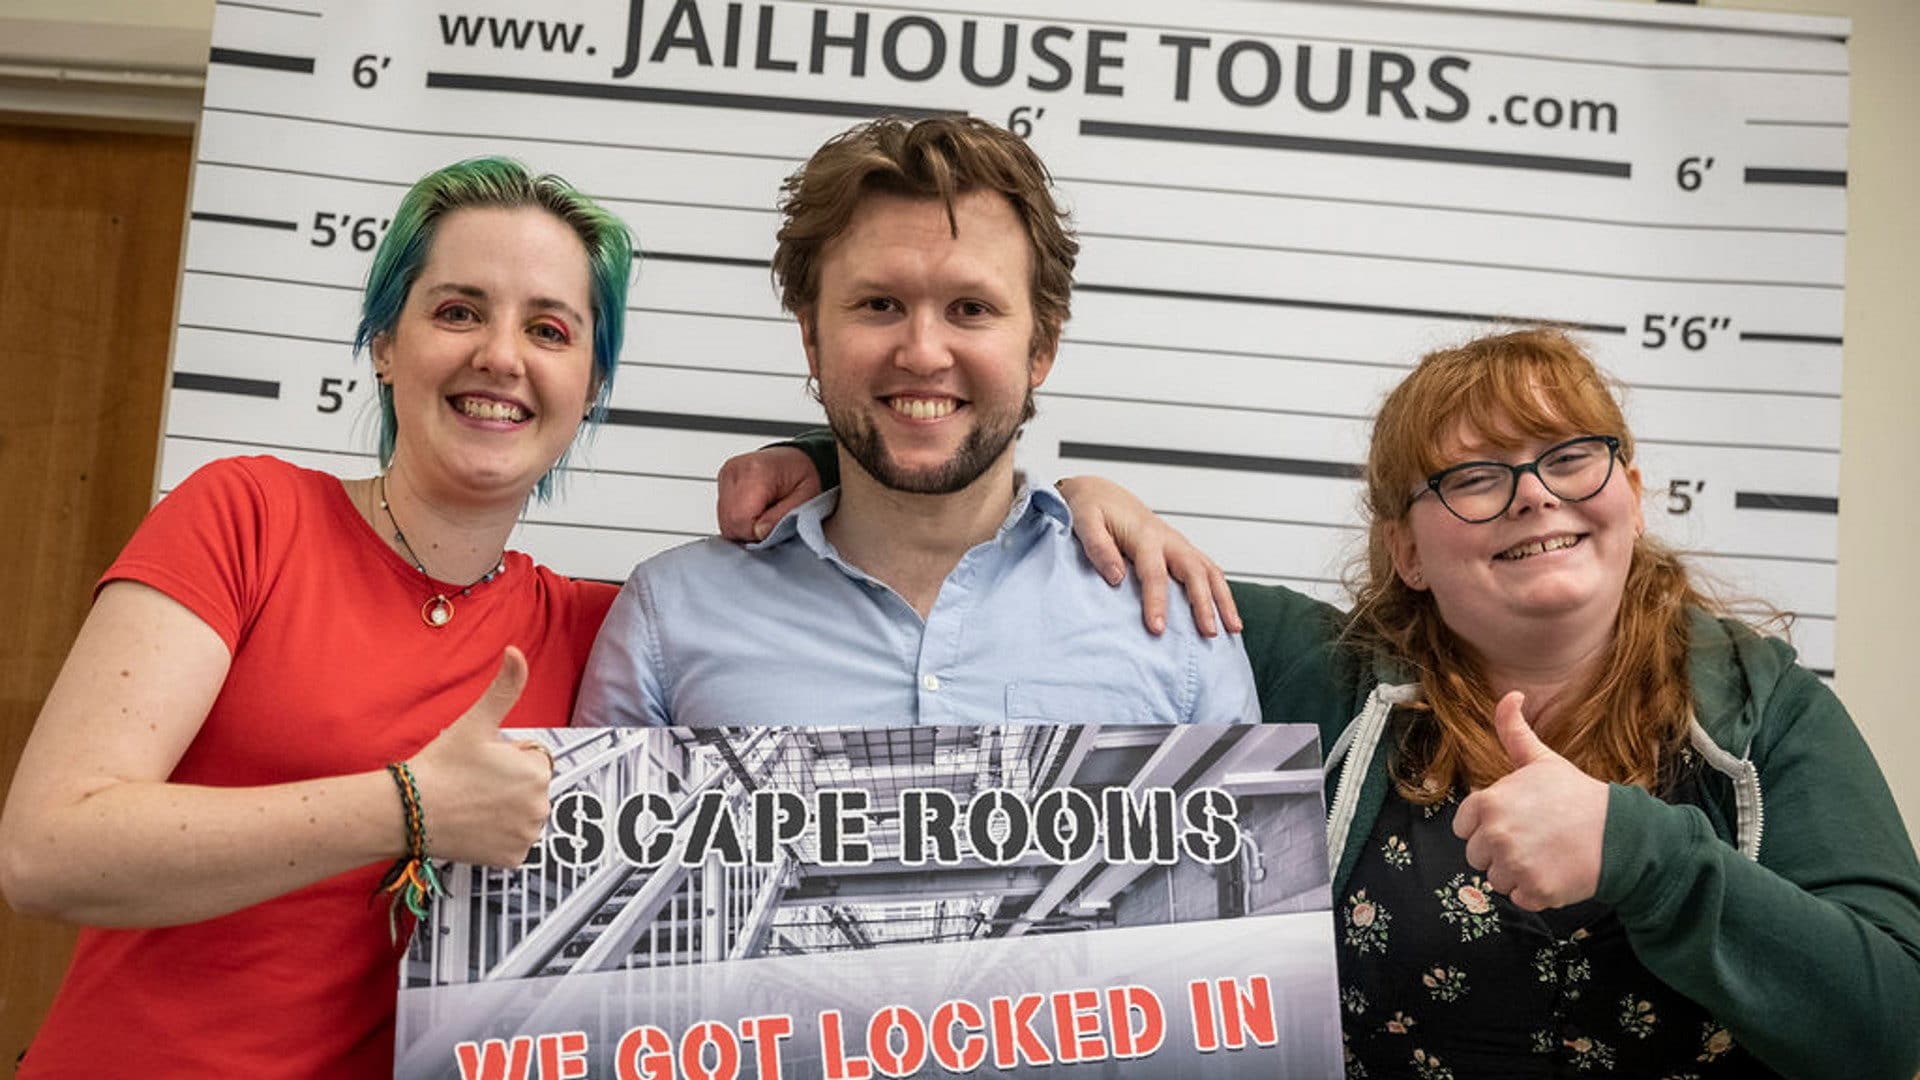 Shepton Mallet Prison - Escape Rooms